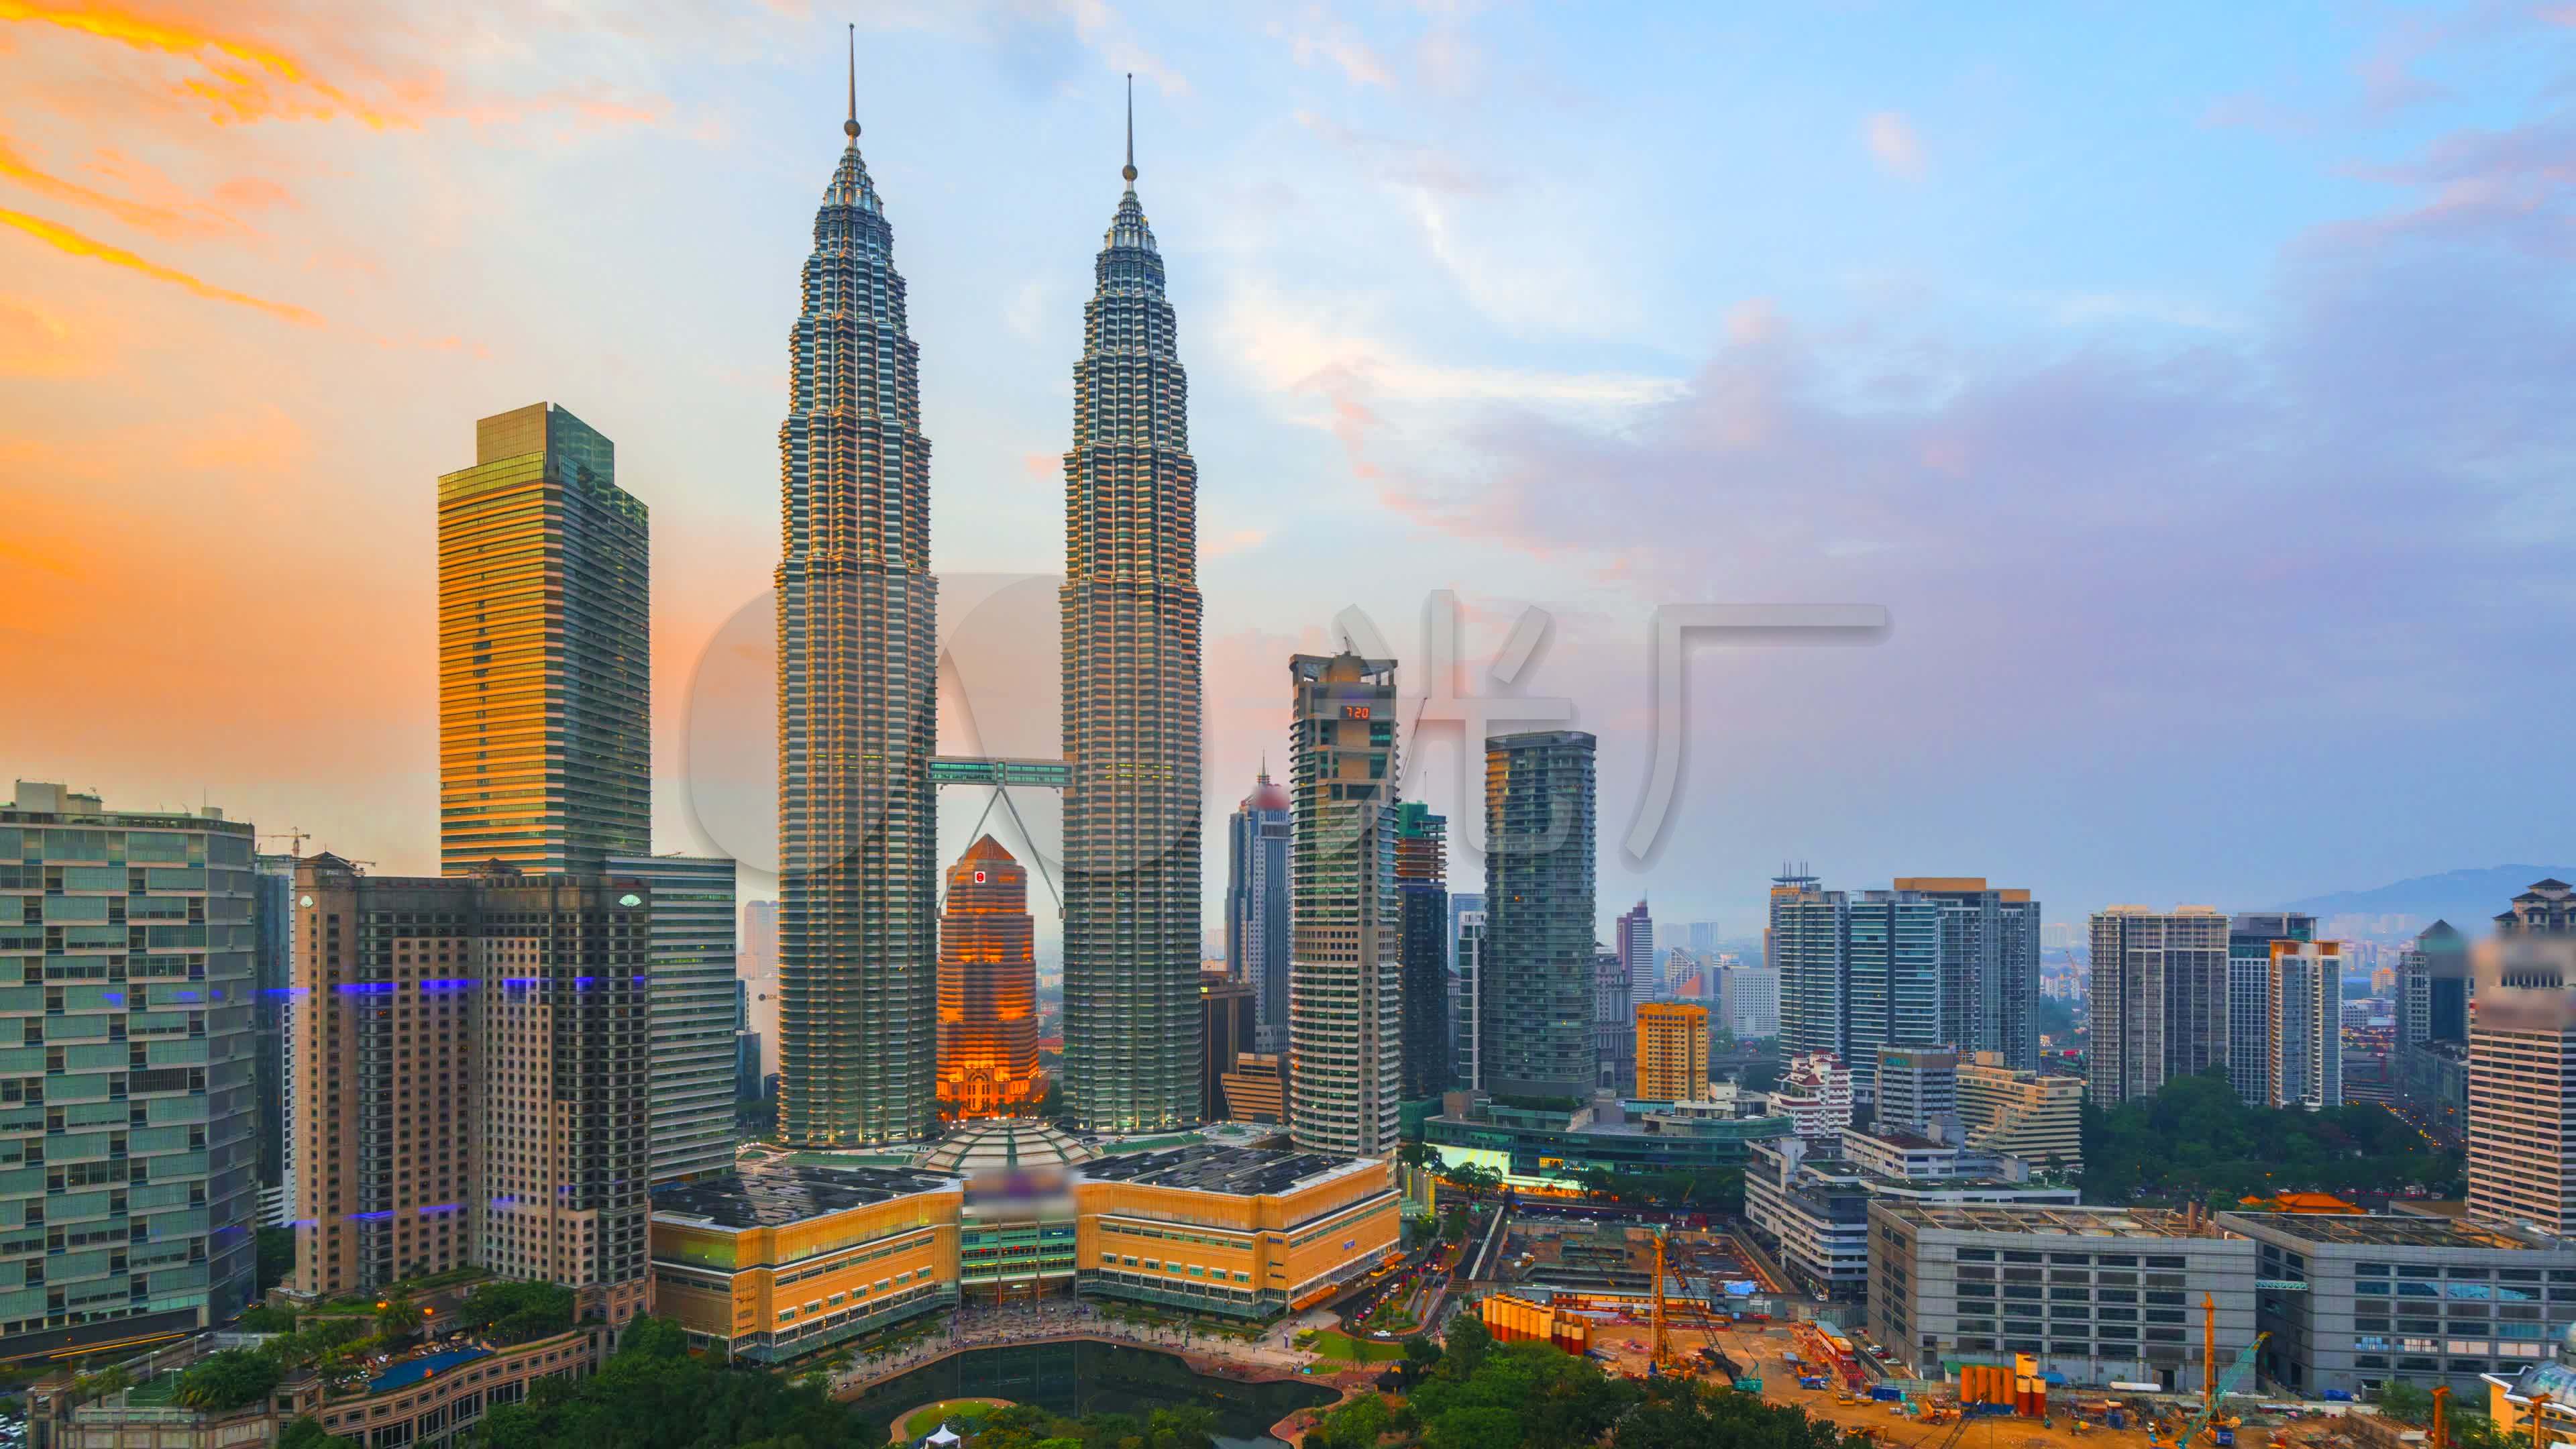 壁纸 马来西亚，吉隆坡，摩天大楼，城市，灯光，黄昏 5120x2880 UHD 5K 高清壁纸, 图片, 照片